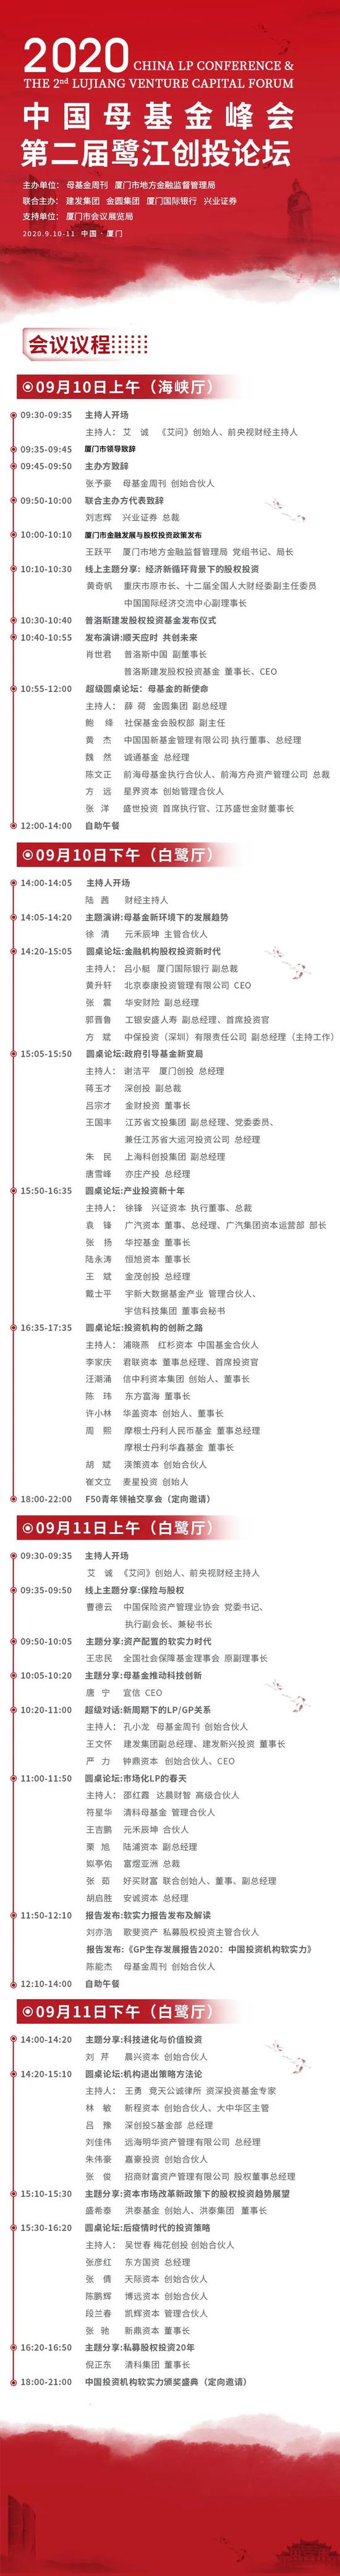 2020中国母基金峰会暨第二届鹭江创投论坛议程